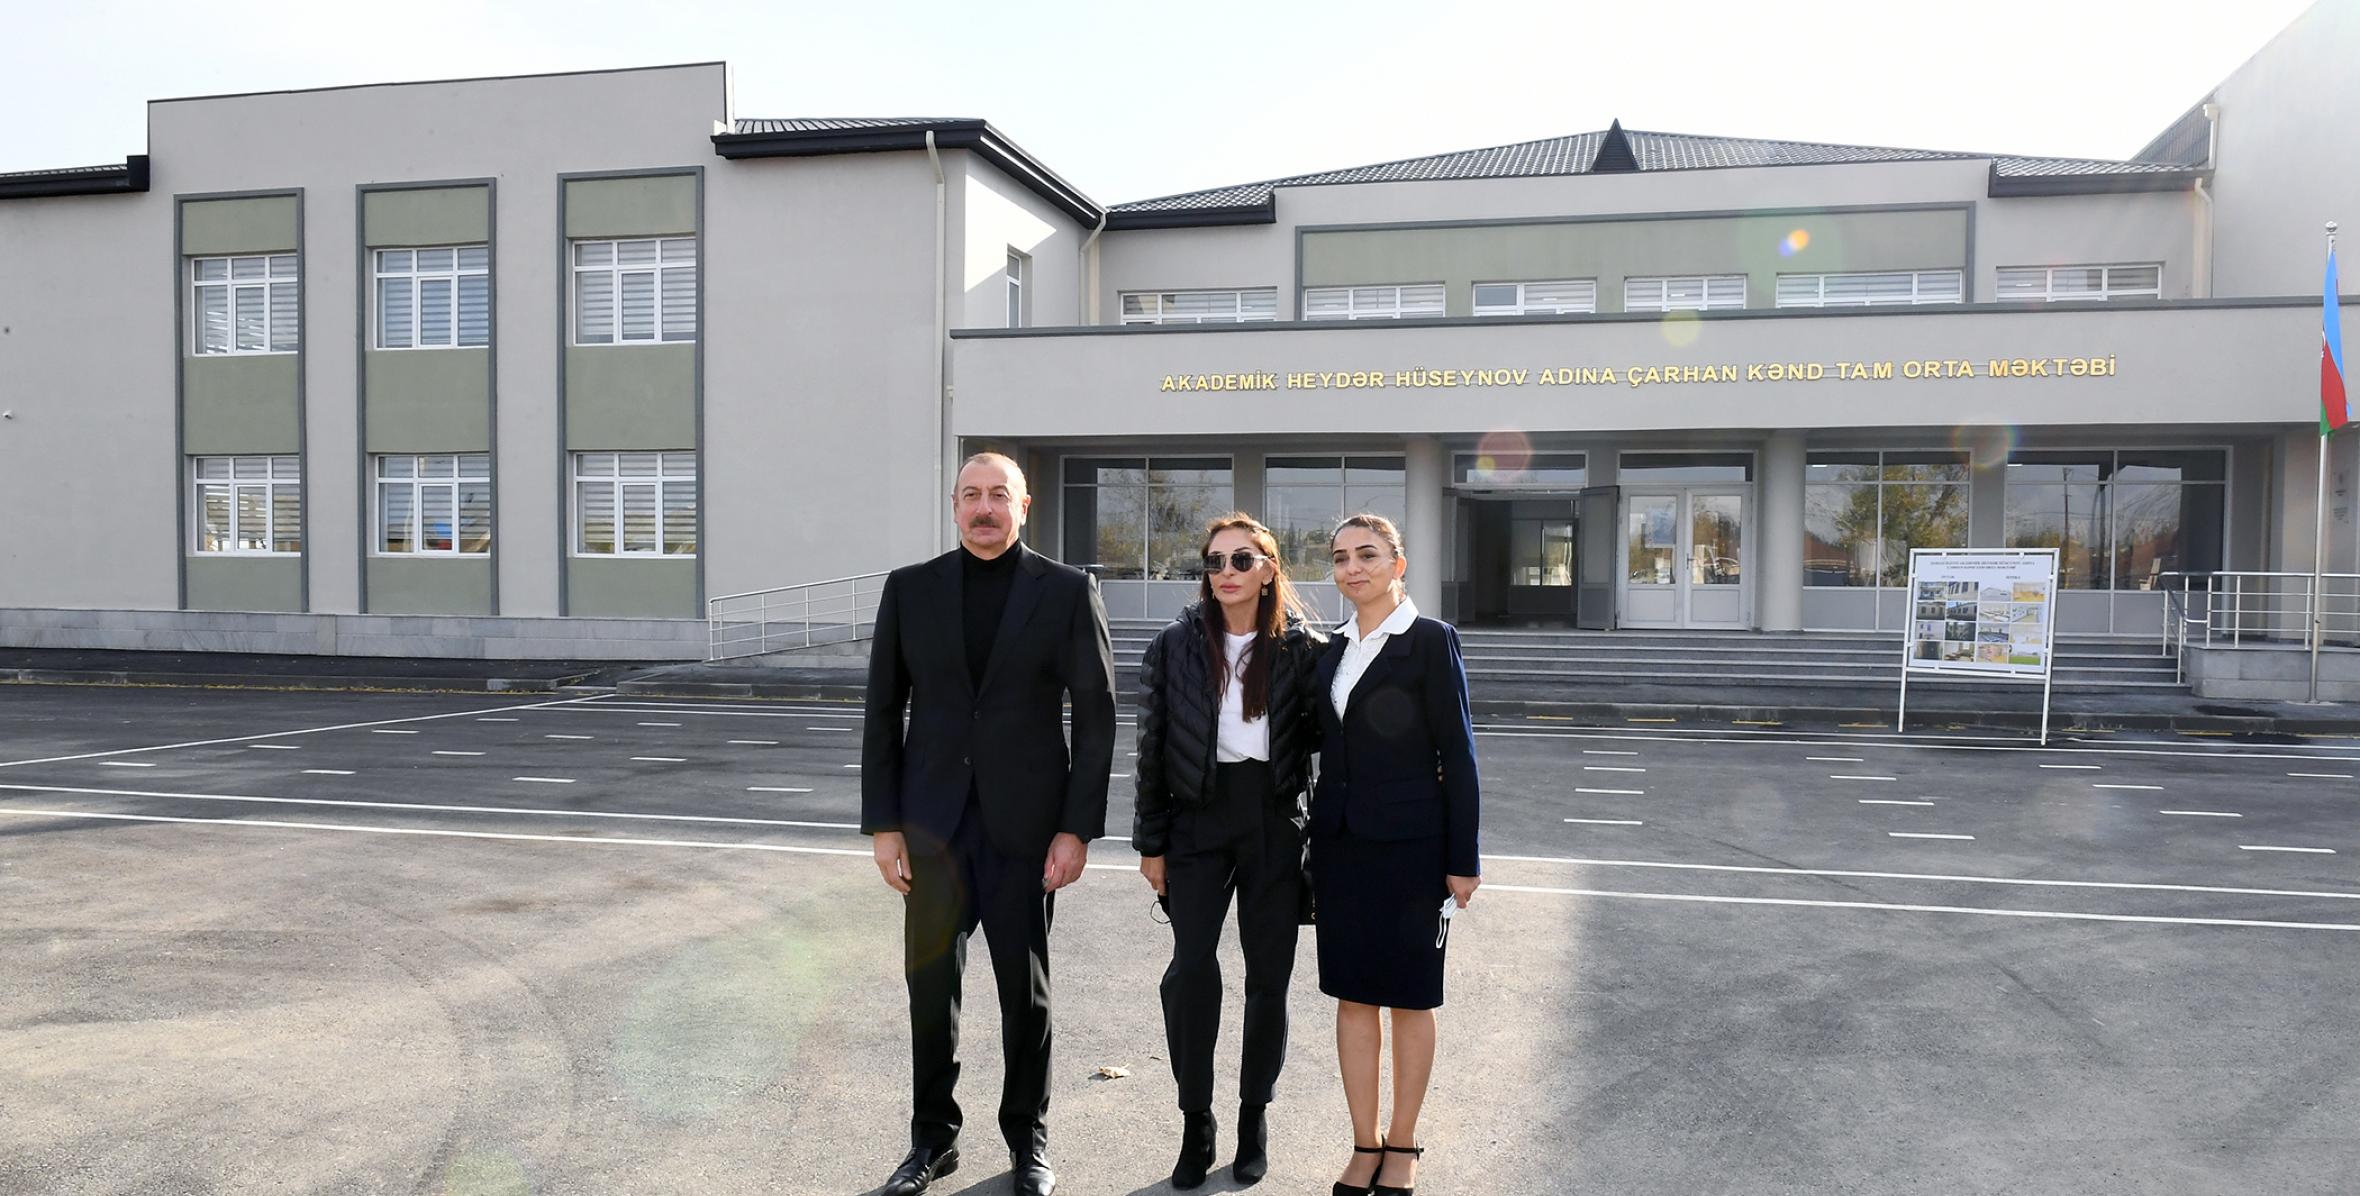 İlham Əliyev və birinci xanım Mehriban Əliyeva Şamaxıda Çarhan kənd orta məktəbinin yeni binasının açılışında iştirak ediblər